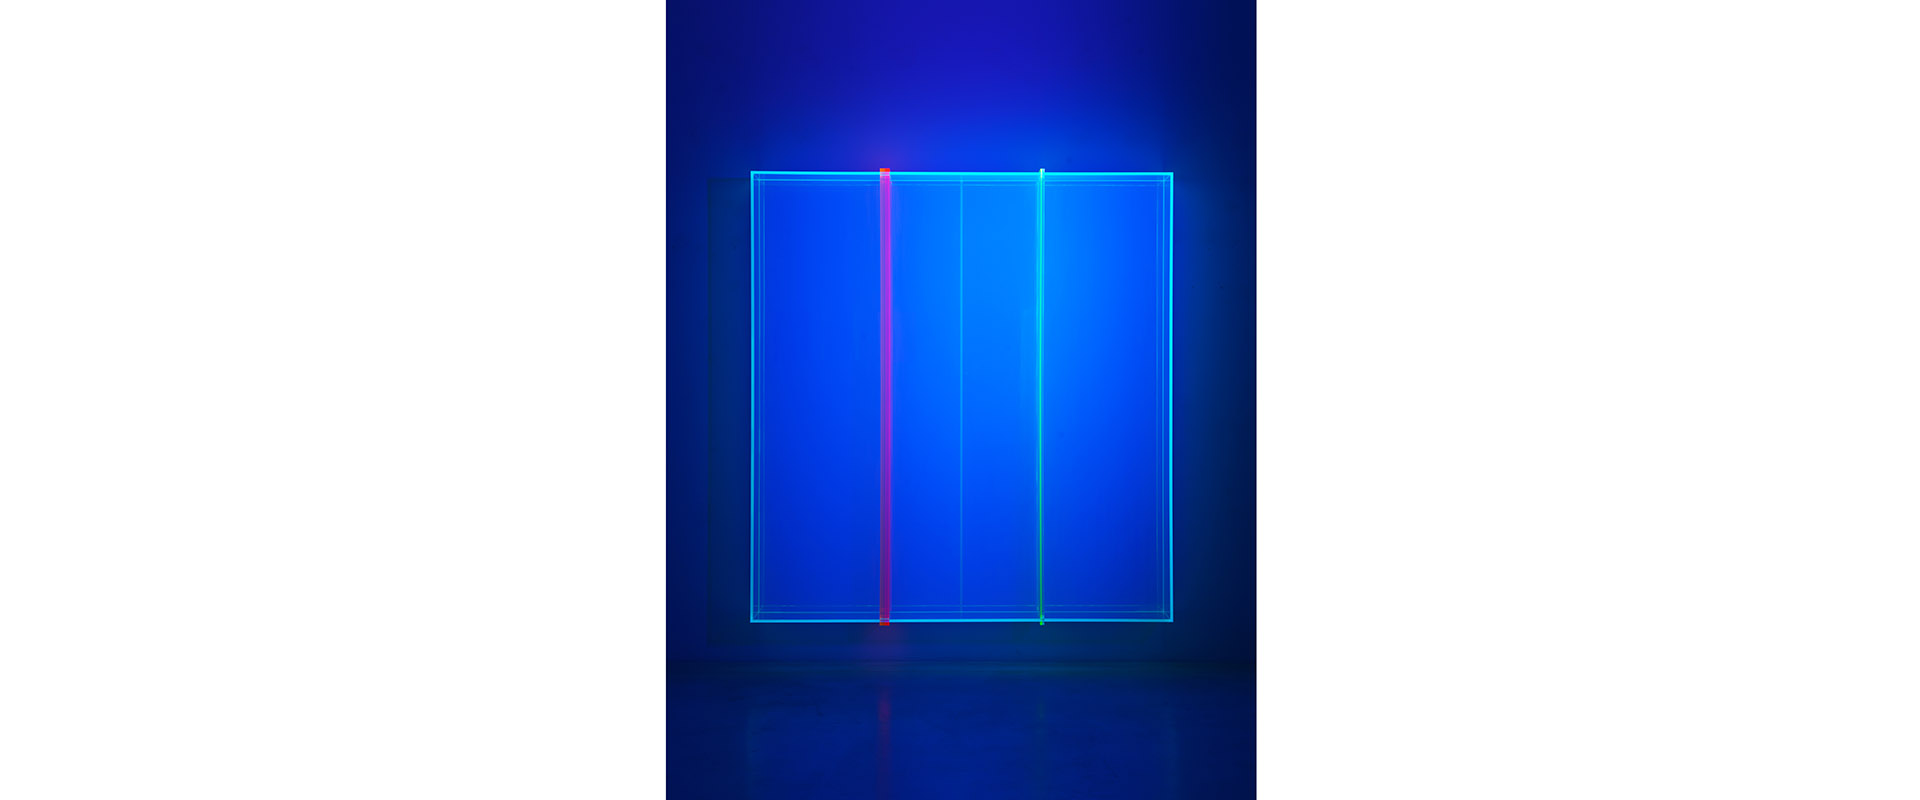 colormirror rainbow 2 two together crosses - 2019, Acrylglas, fluoreszierend, 180 x 168 x 18 cm, Schwarzlichtansicht